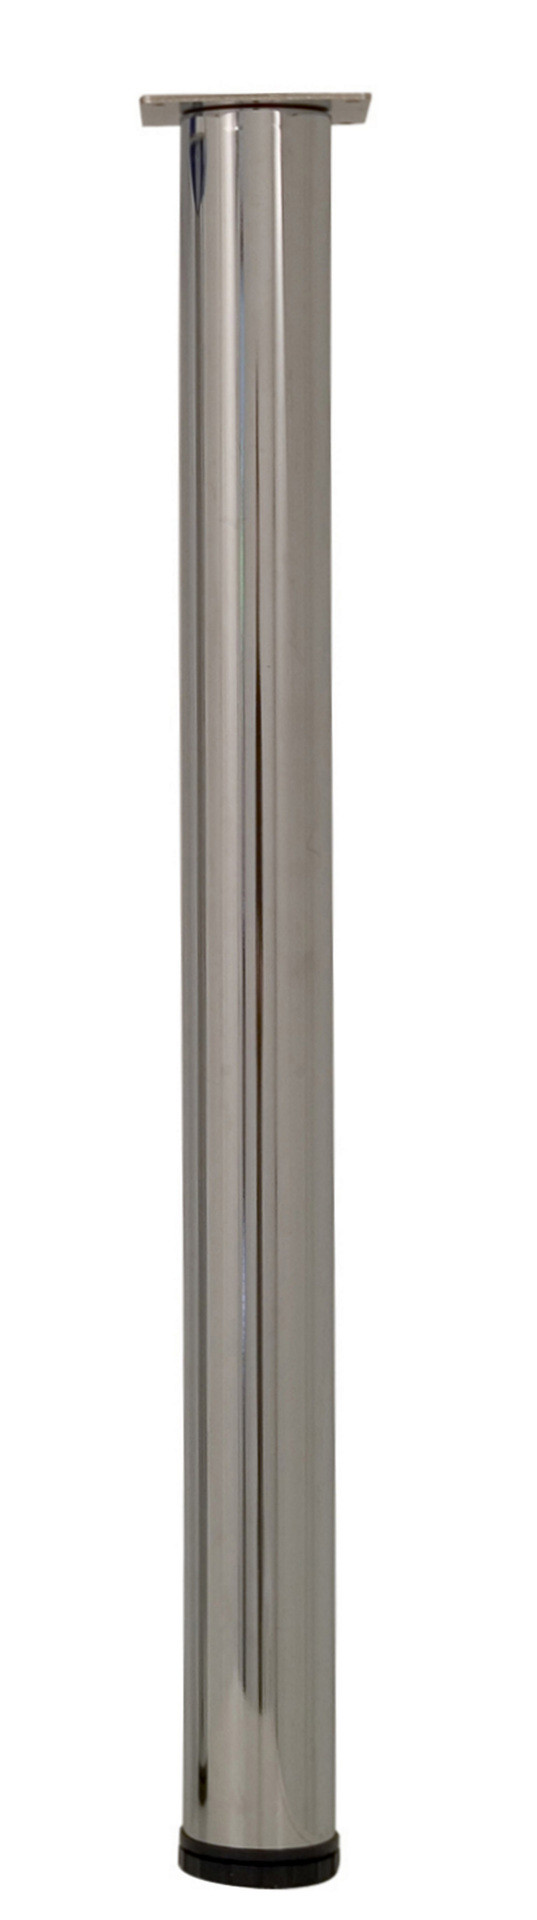 Pied de table cylindrique réglable acier chromé gris, de 70 à 73 cm